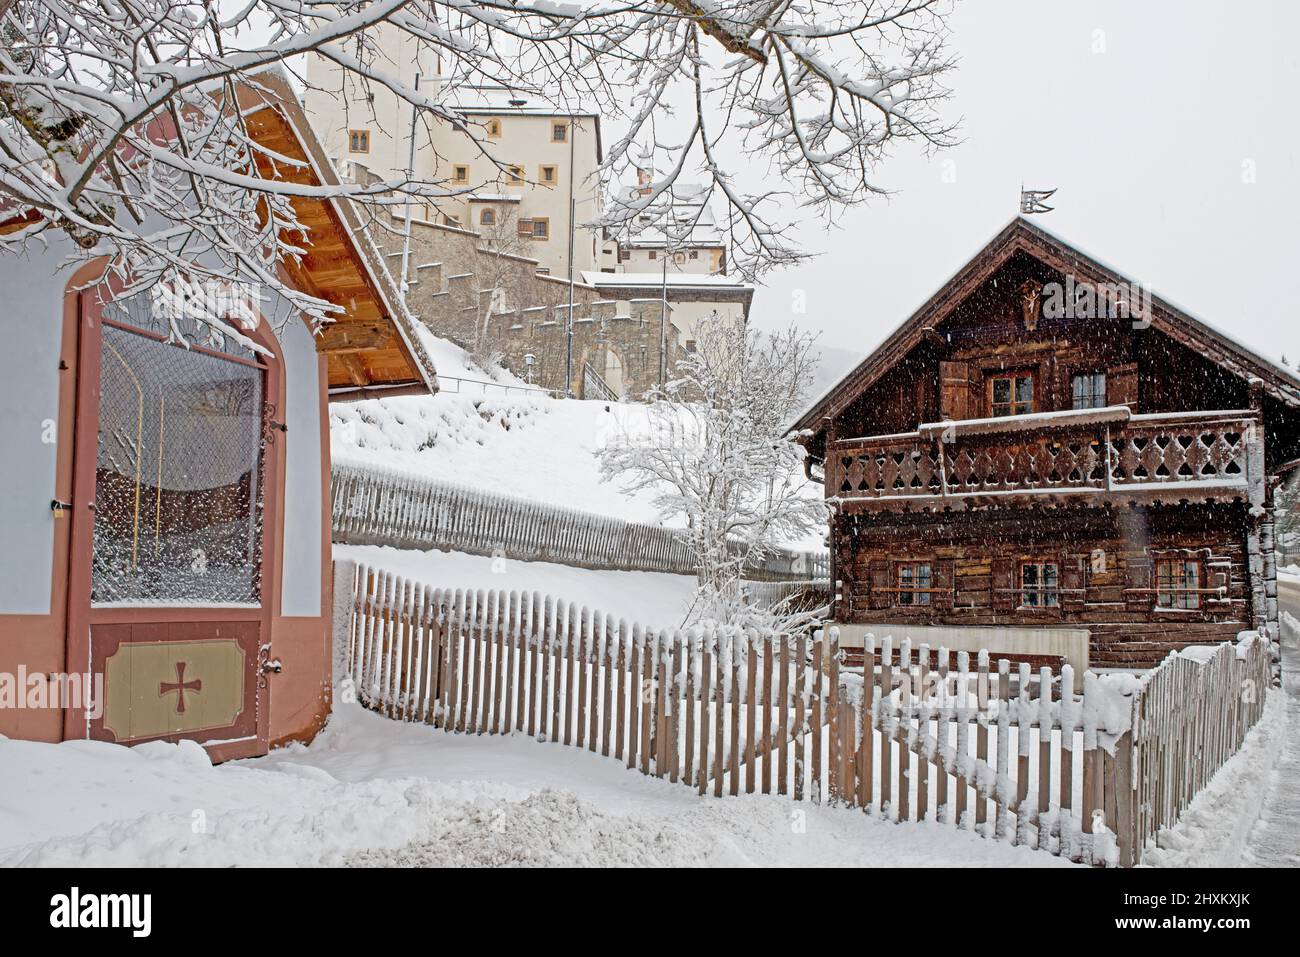 Piccola vecchia casa di legno con recinzione in legno e cappella in primo piano, Fortressin sfondo tutto coperto di neve, Mauterndorf, Austria Foto Stock